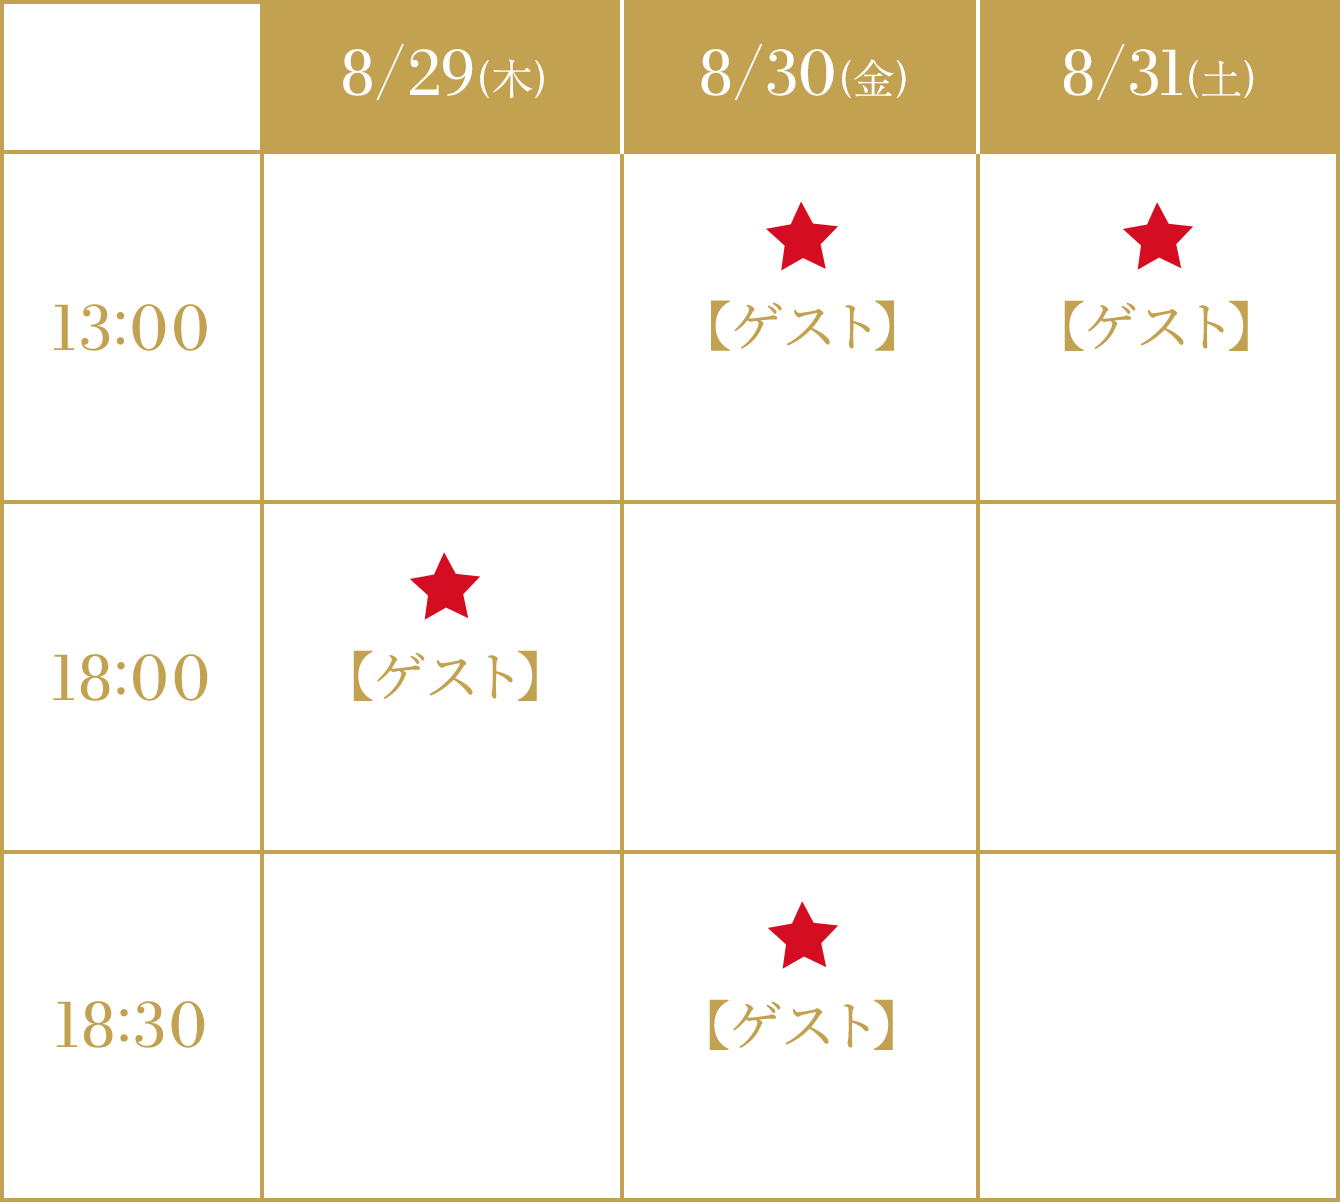 大阪公演スケジュール